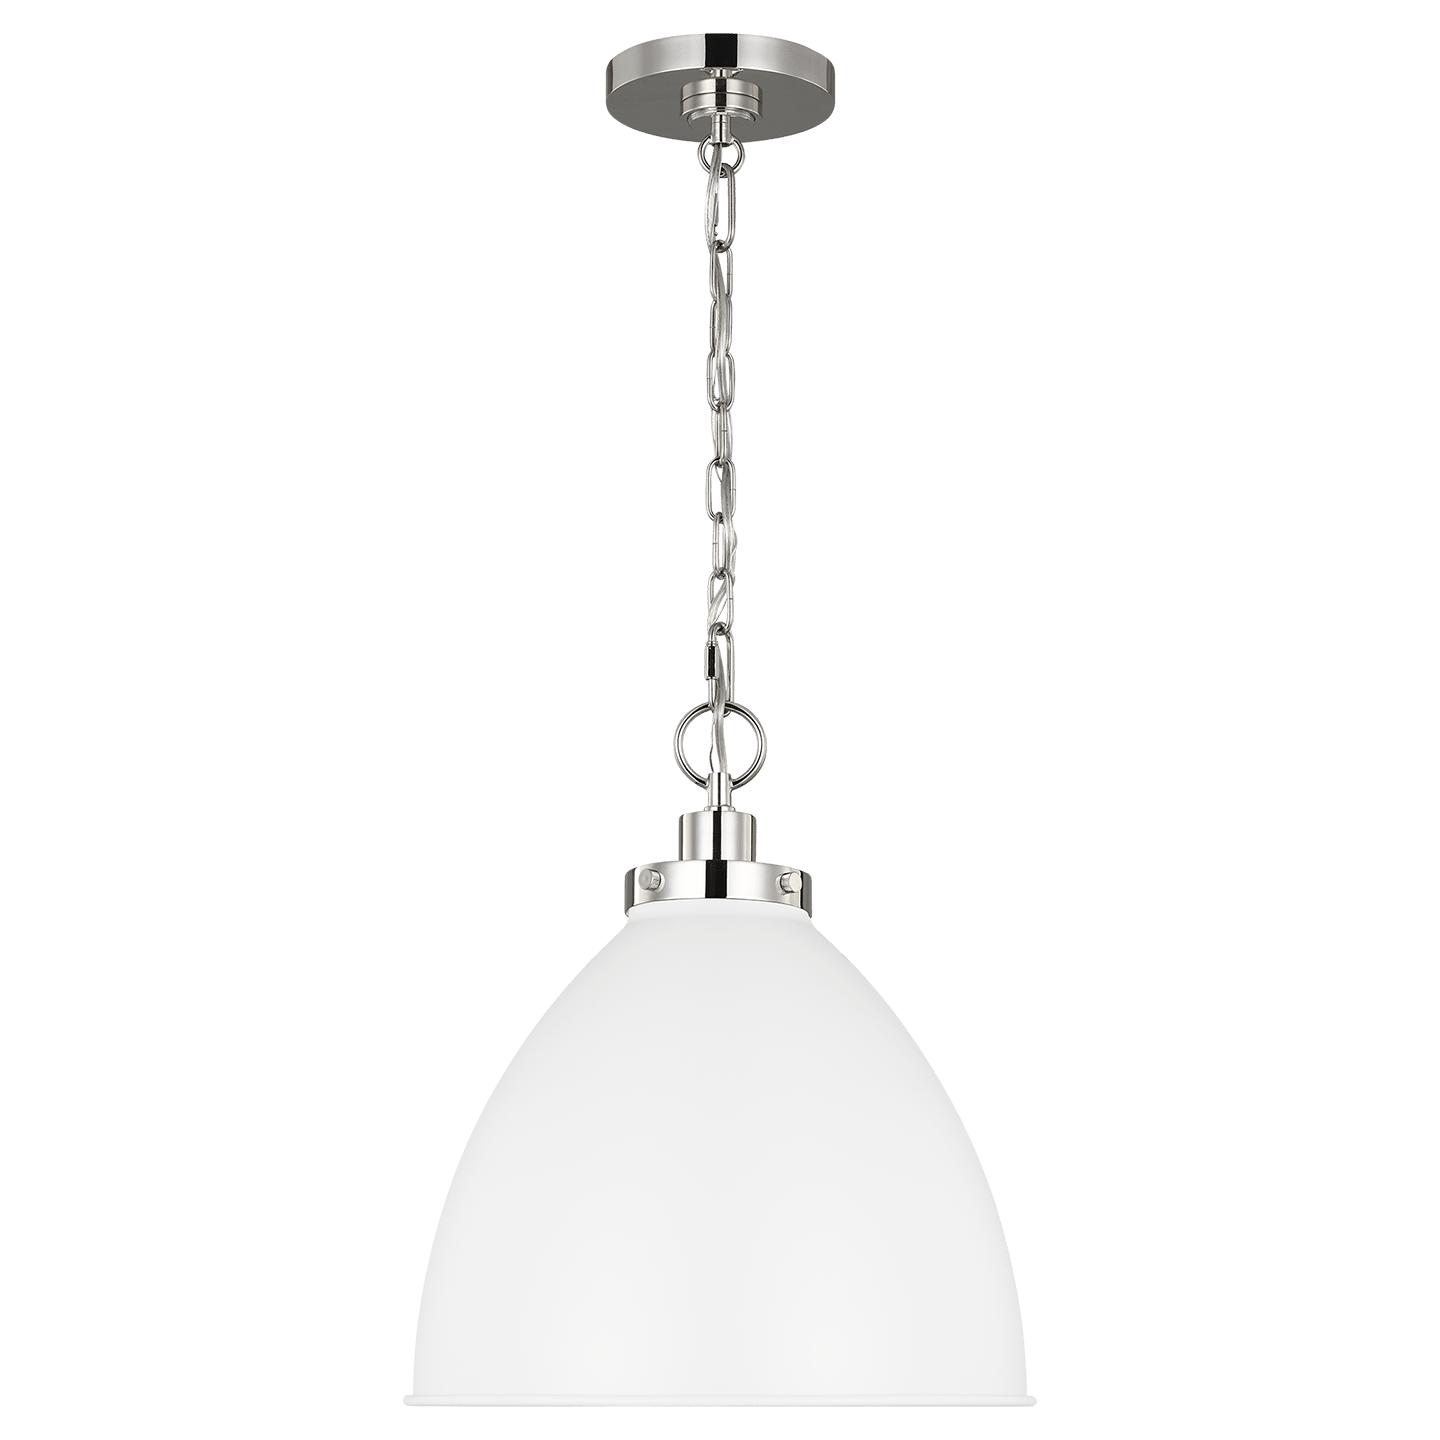 Купить Подвесной светильник Wellfleet Medium Dome Pendant в интернет-магазине roooms.ru